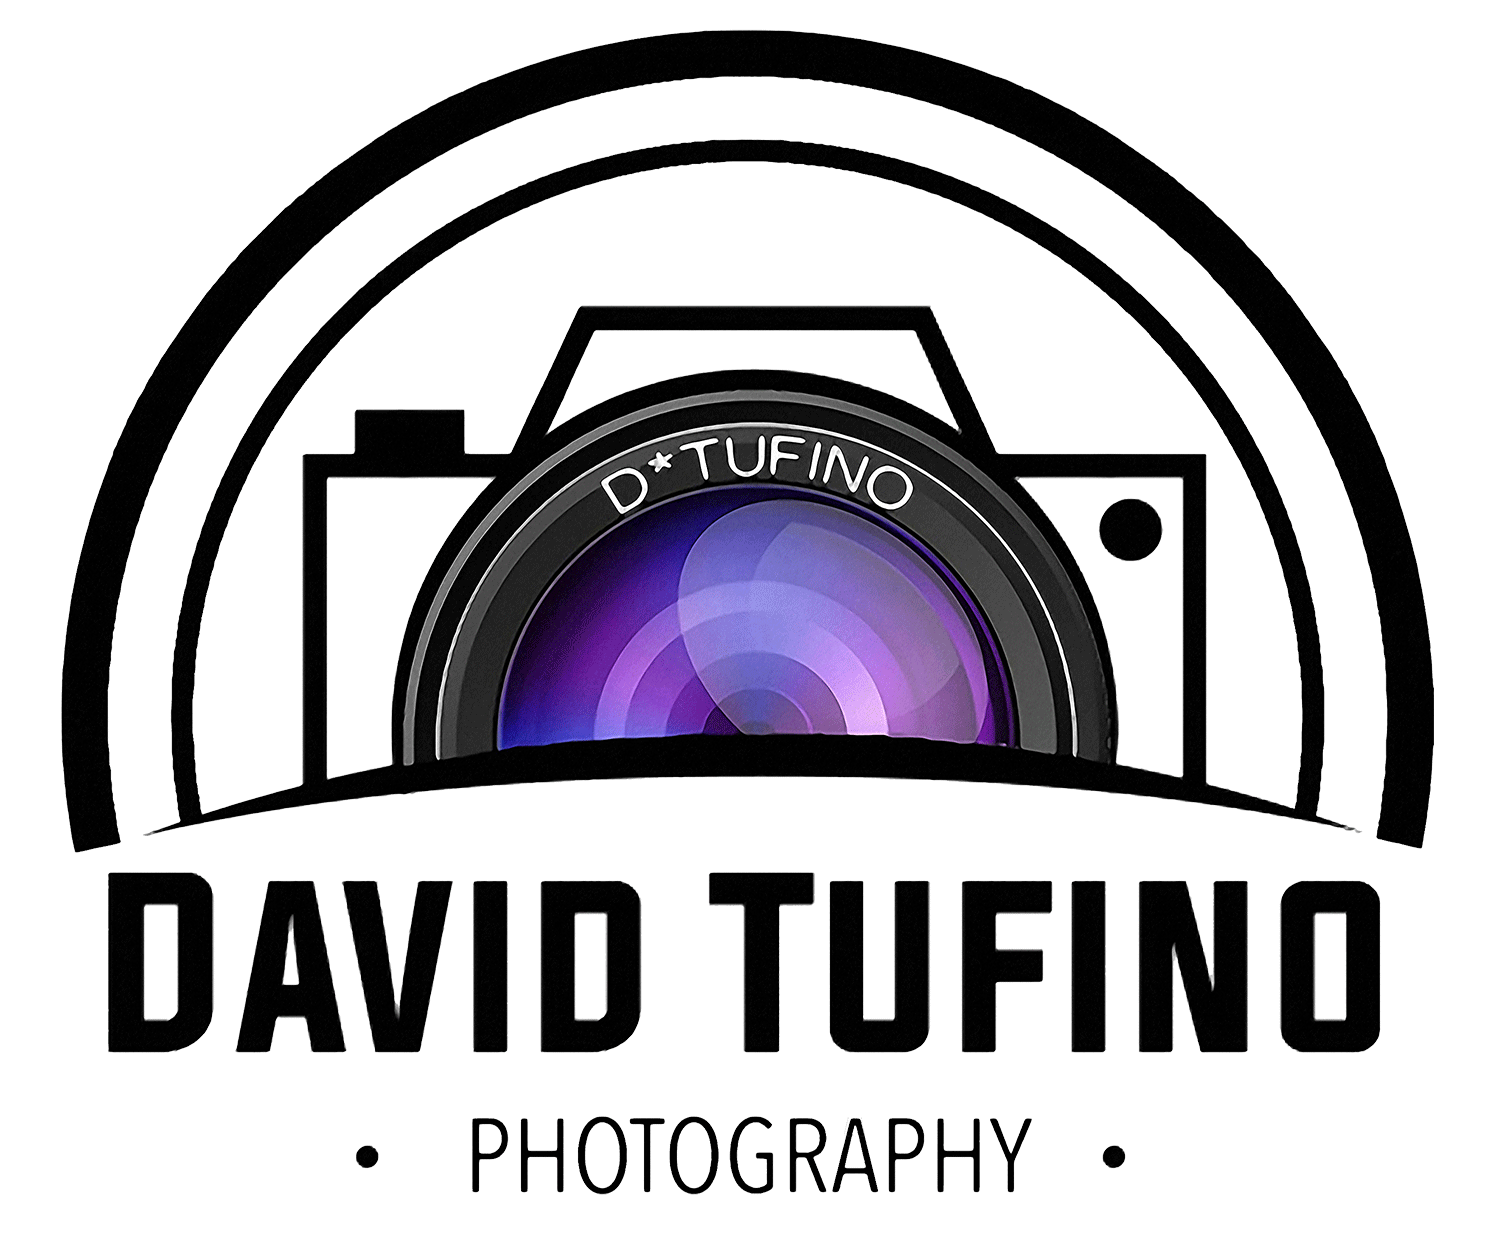 David Tufino Photography